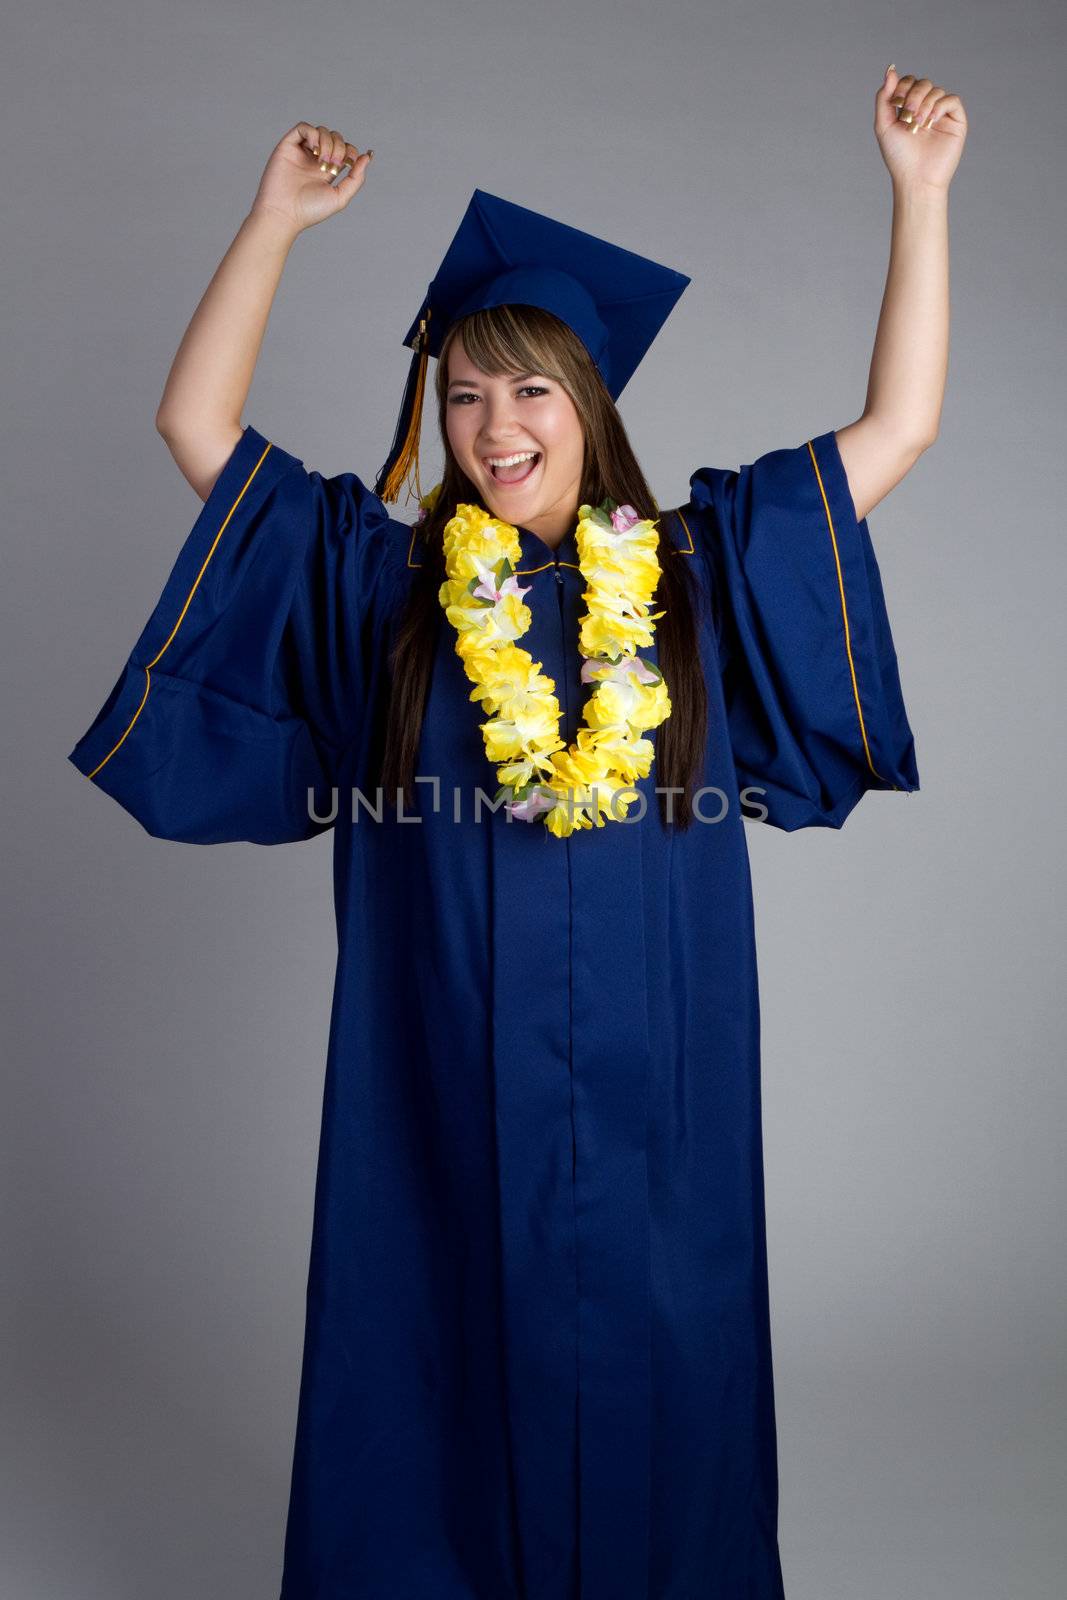 Excited Graduate Girl by keeweeboy